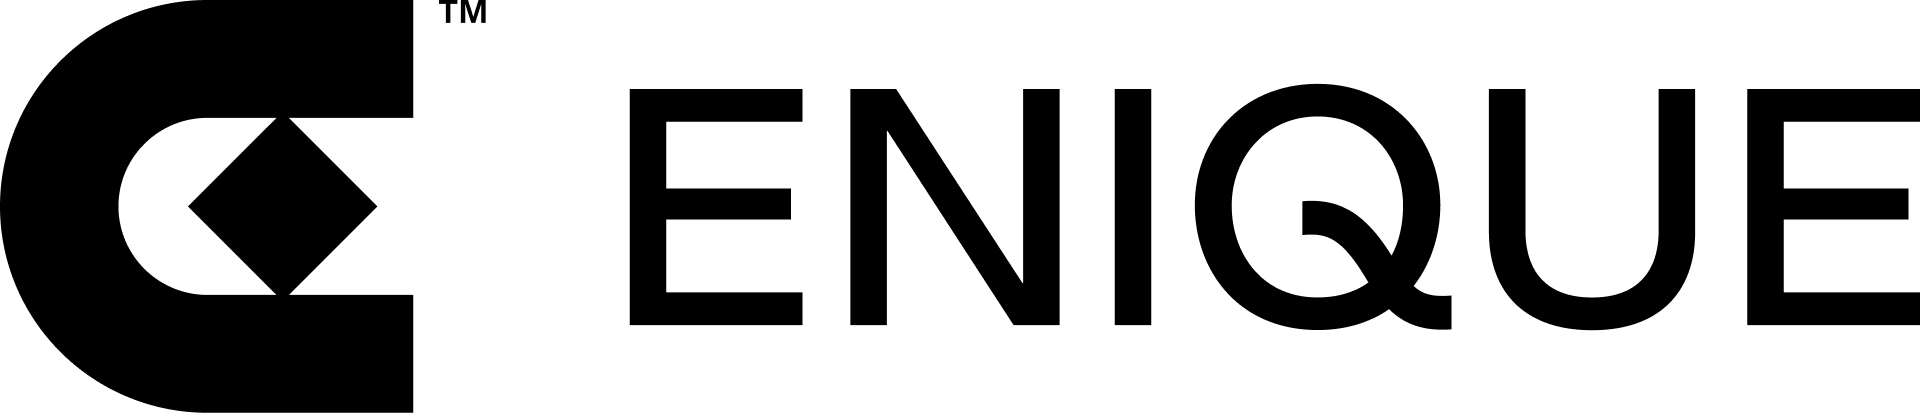 Enique logotype